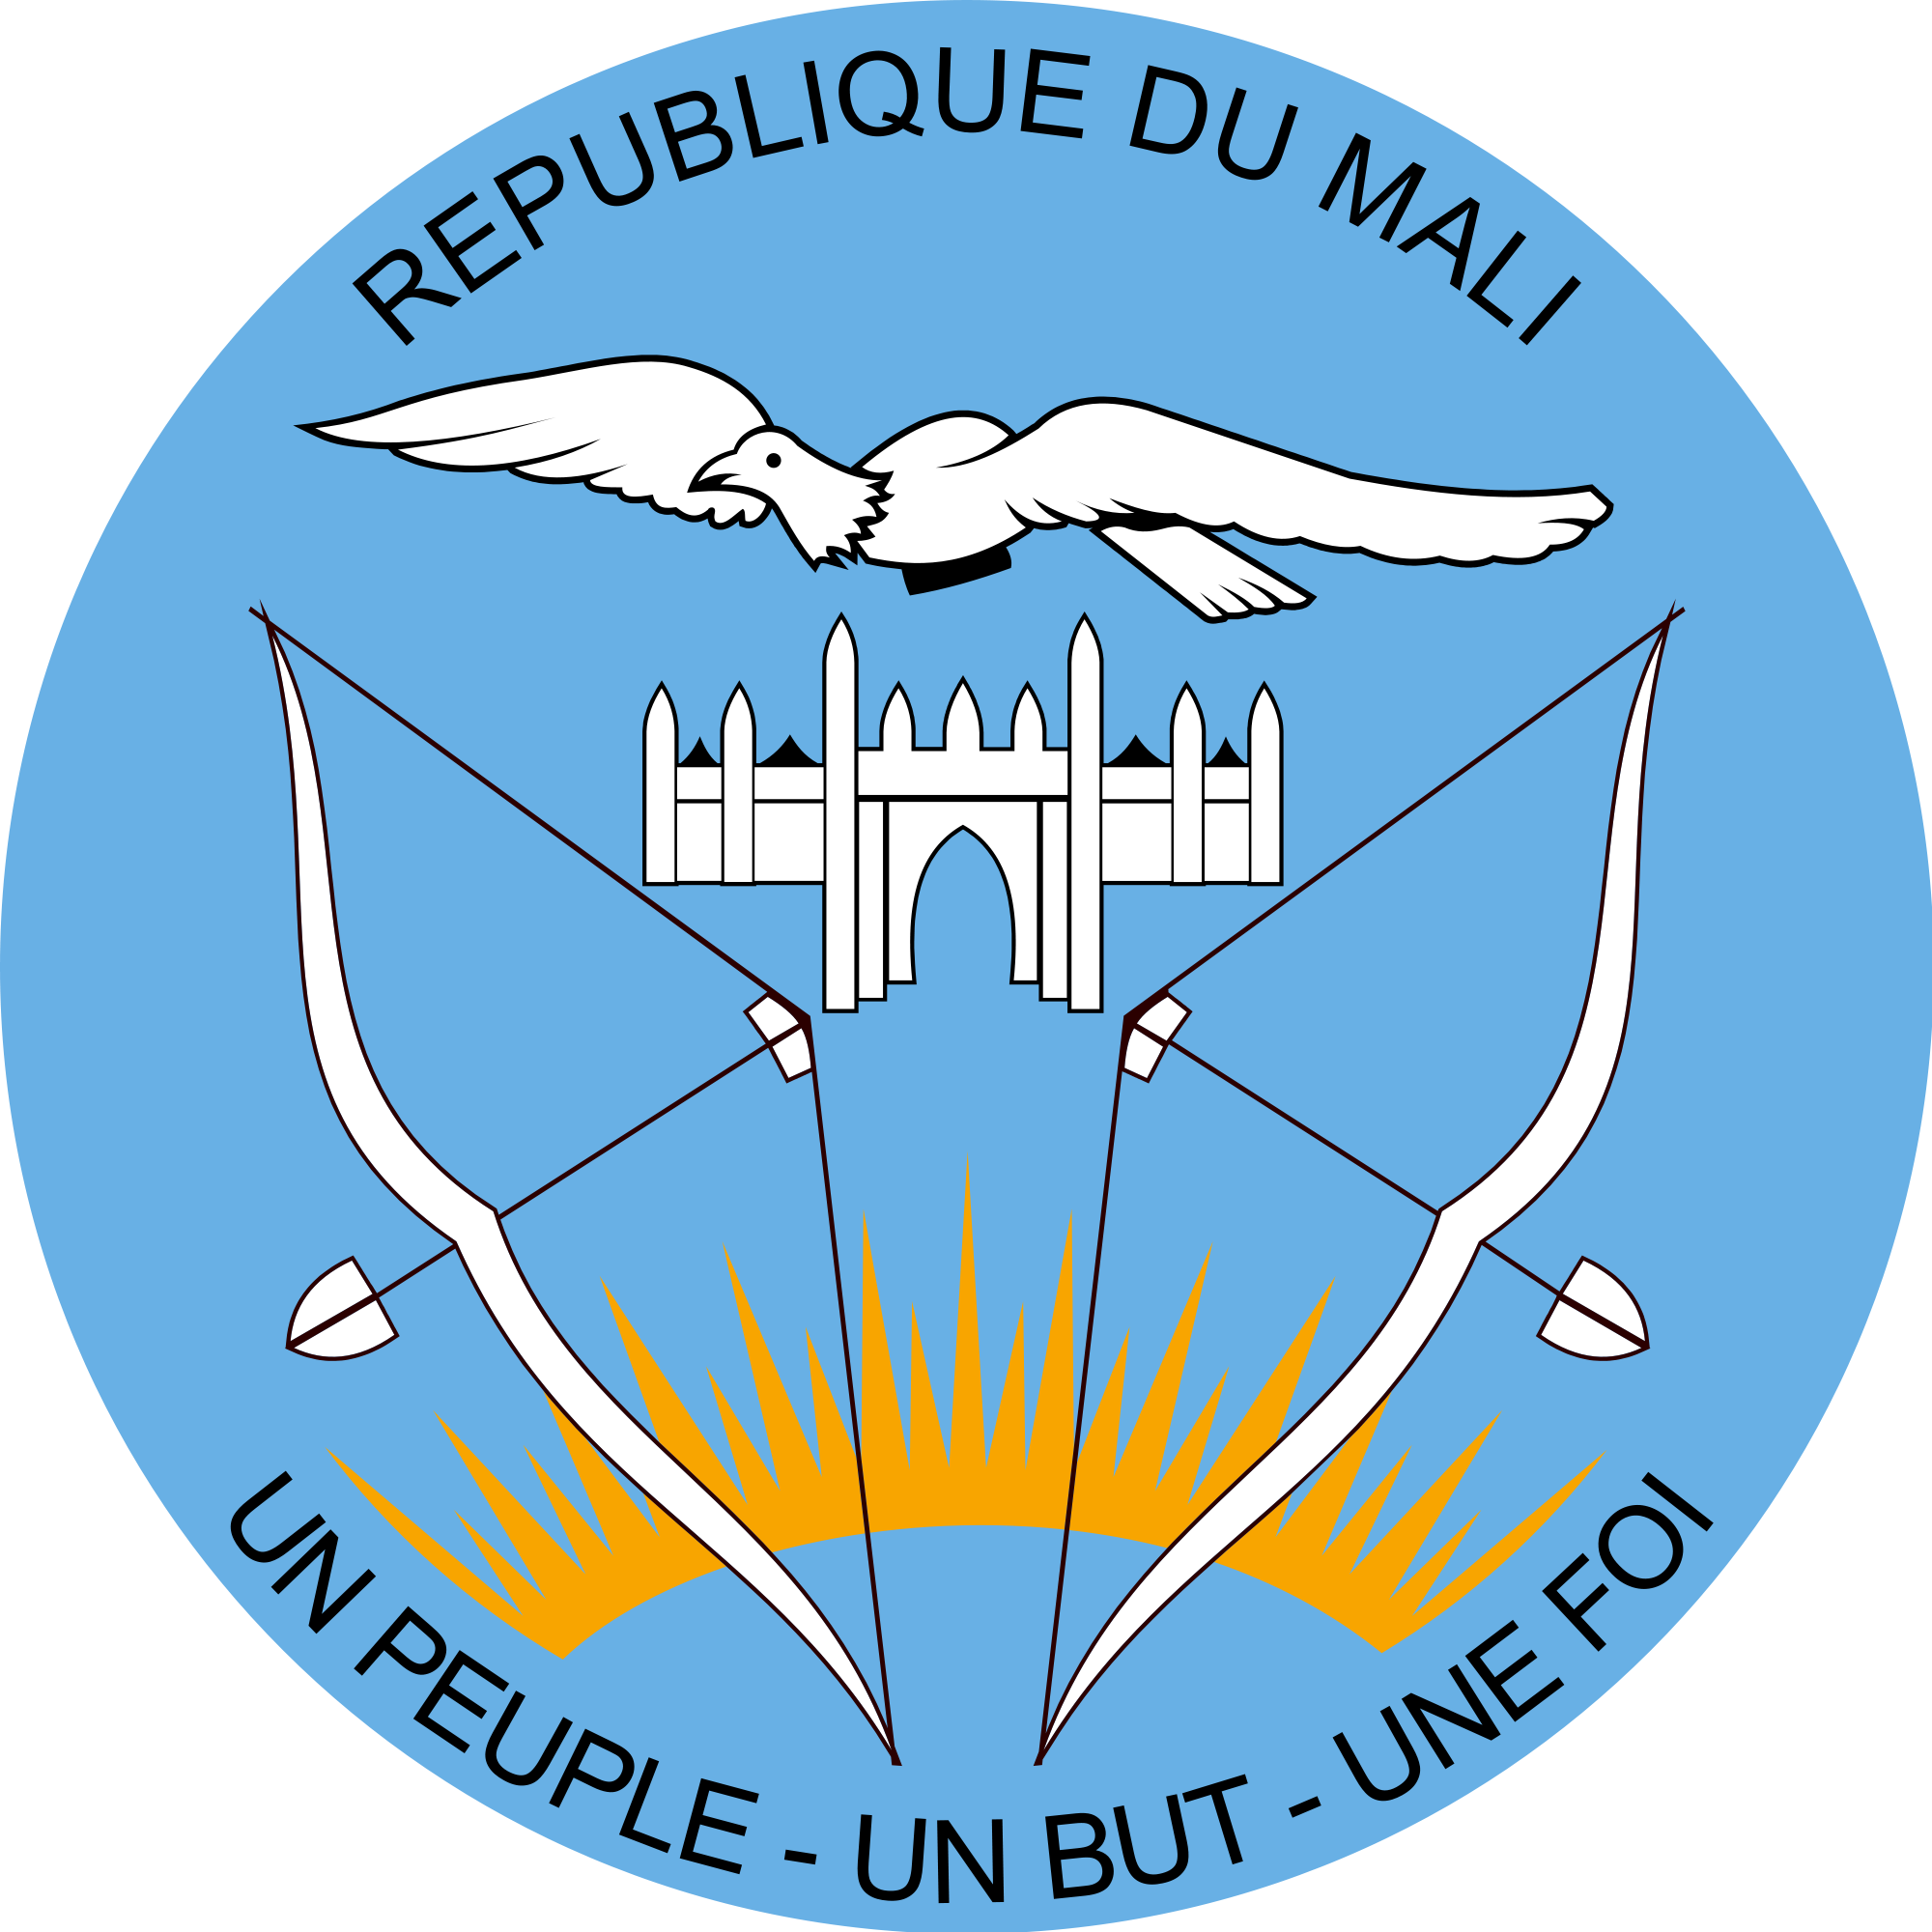 Emblem of Mali